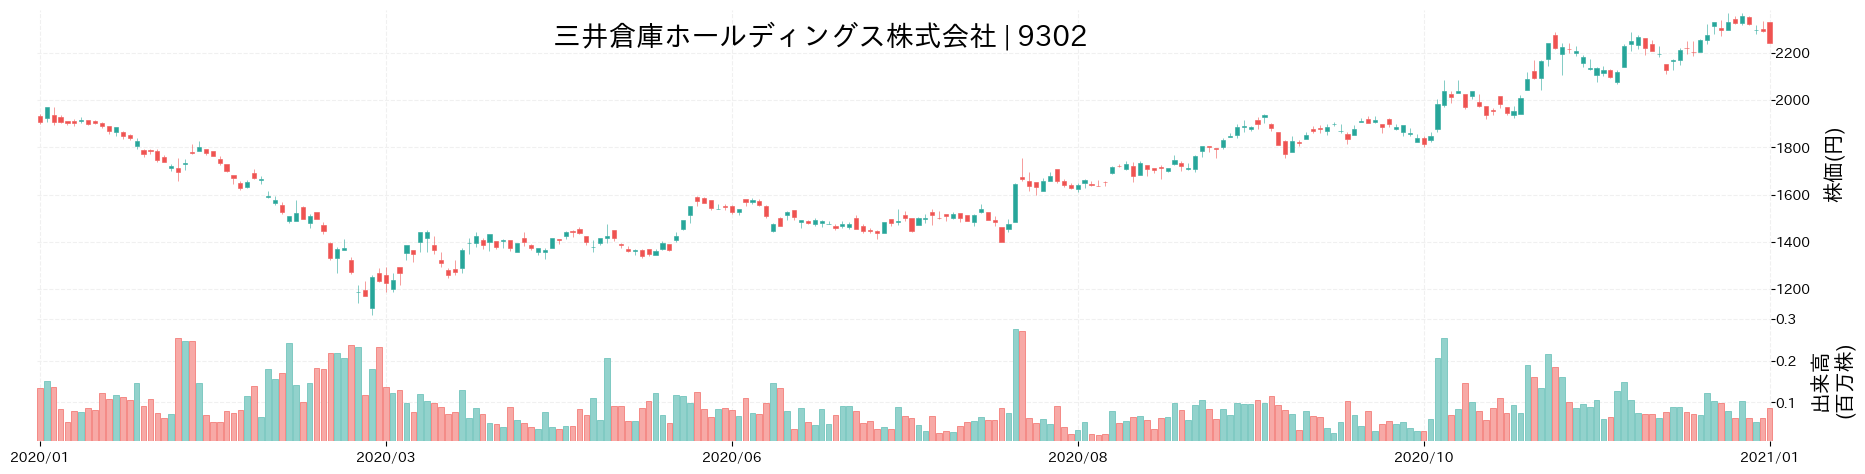 三井倉庫ホールディングスの株価推移(2020)